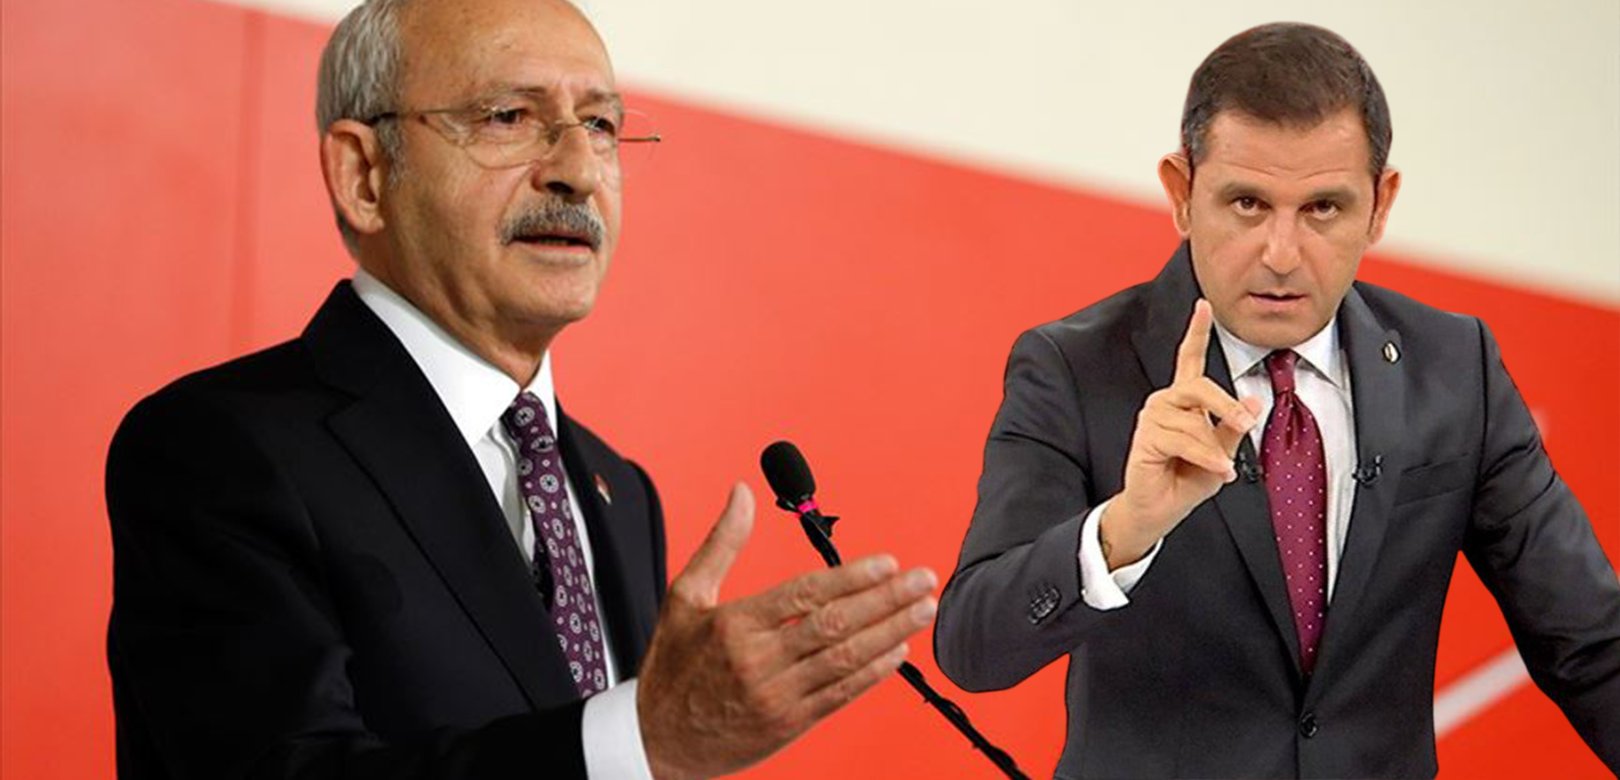 Kılıçdaroğlu Portakal'a cevap verdi: 'Kepazeliktir! Çukurluktur!'